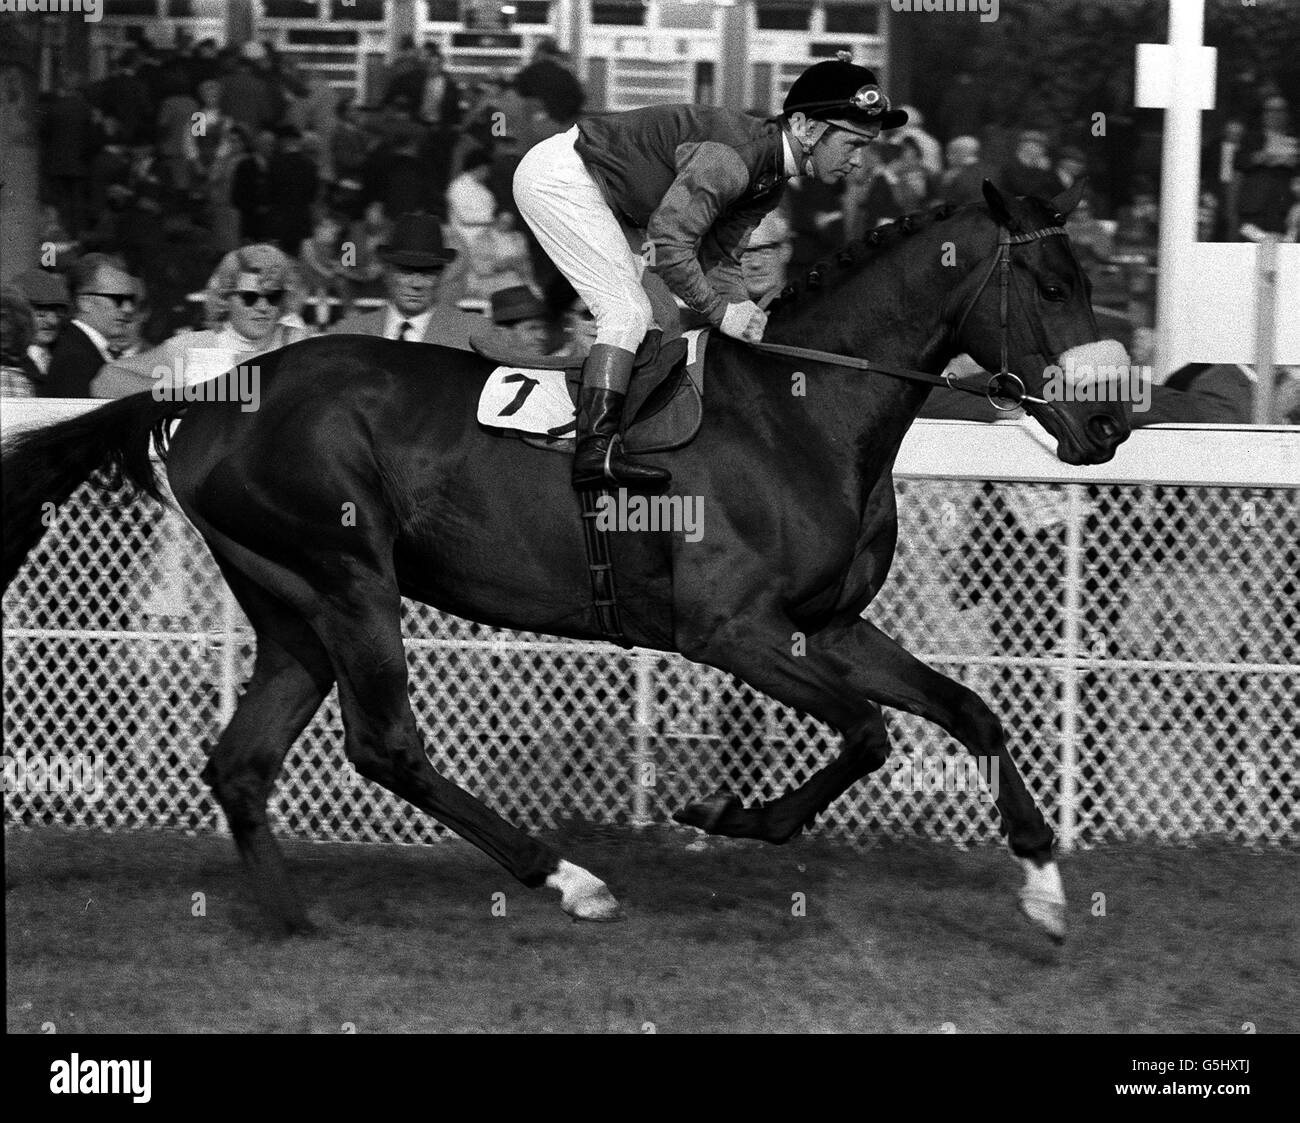 1970: Carta Magna con jockey Geoff Lewis up. La Carta Magna es uno de los caballos entrenados por Ian Balding para la Reina. Por Charlottesville fuera de una ycidon Mare, él tiene una gran resistencia y ganó el año pasado en dos millas (dos veces) y una milla y 7 furlongs. Foto de stock